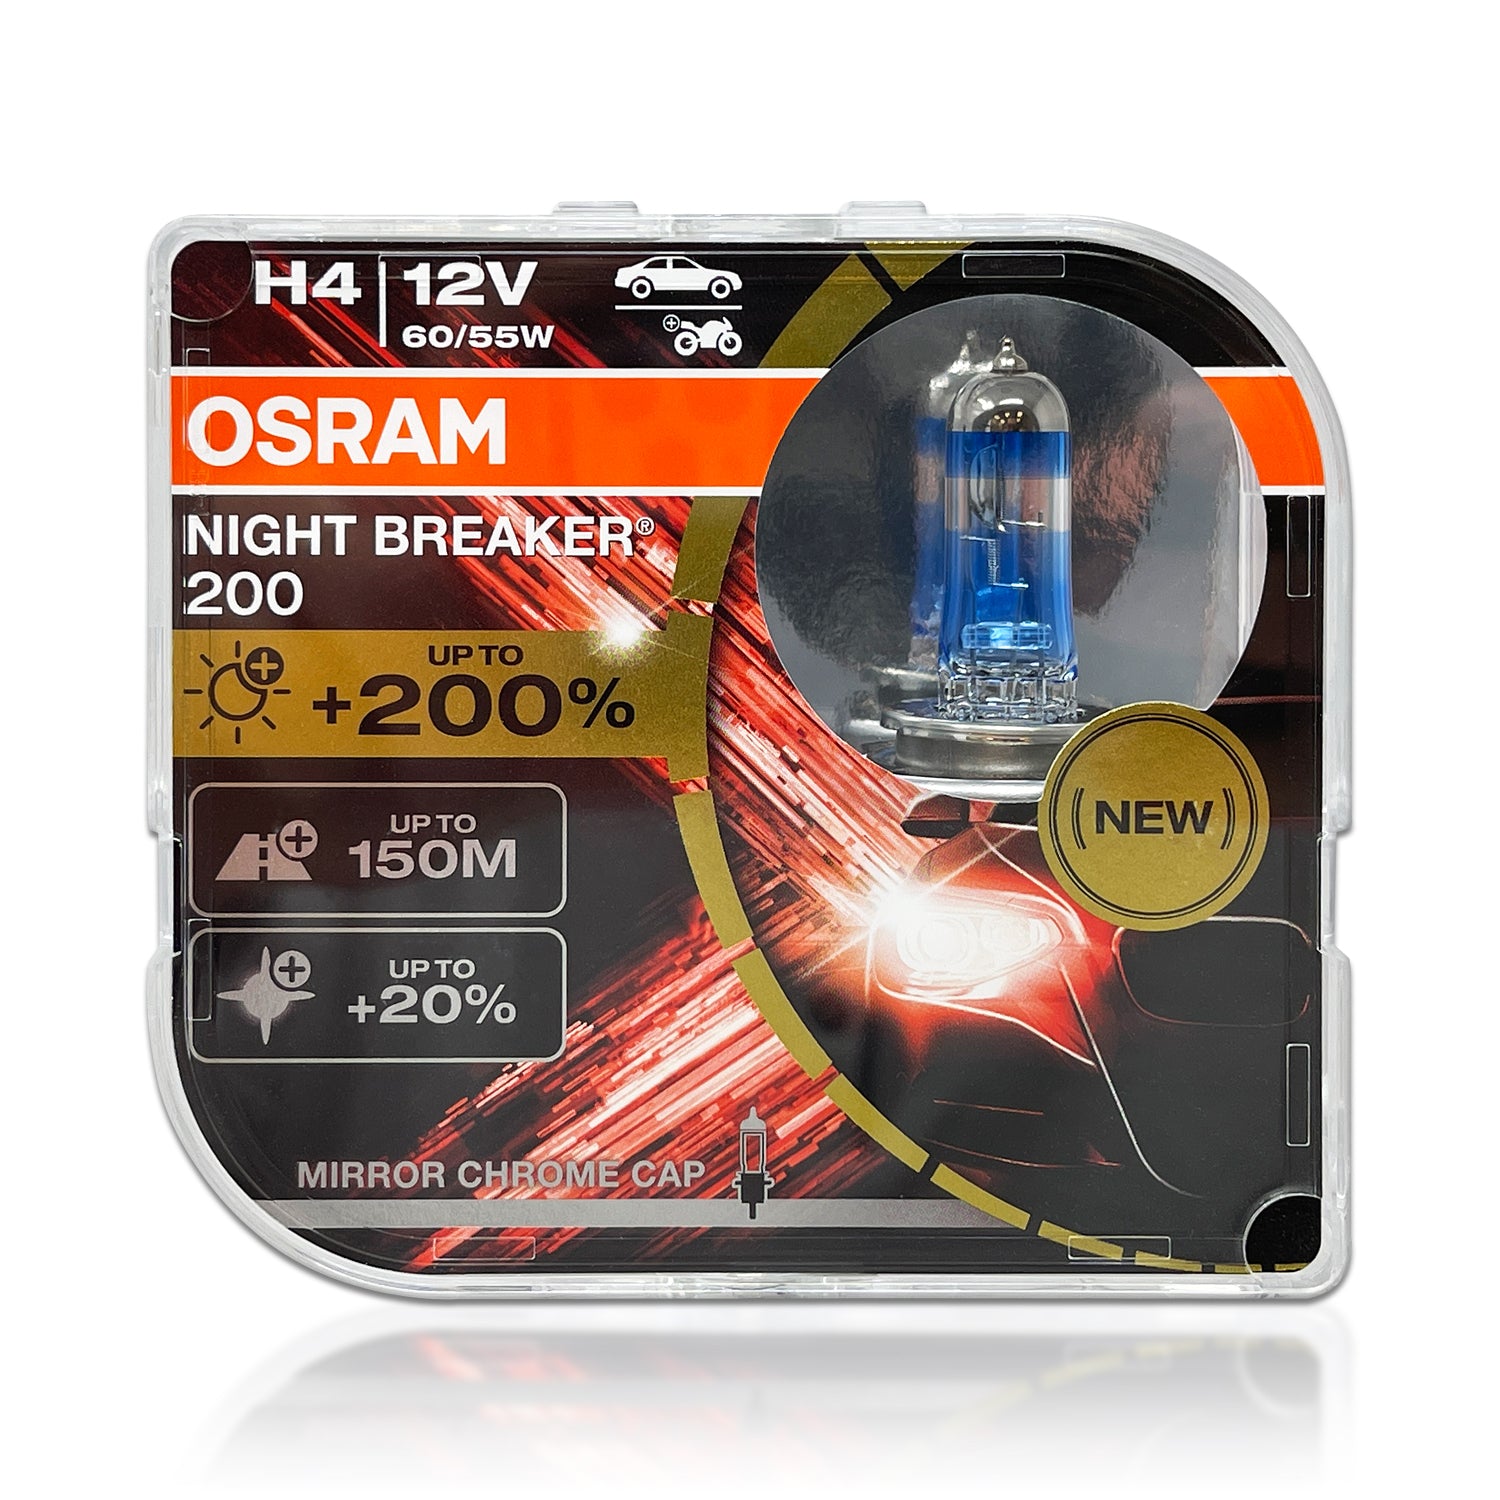 H4 Night Breaker 200 Lâmpada Osram Par +200% Iluminação